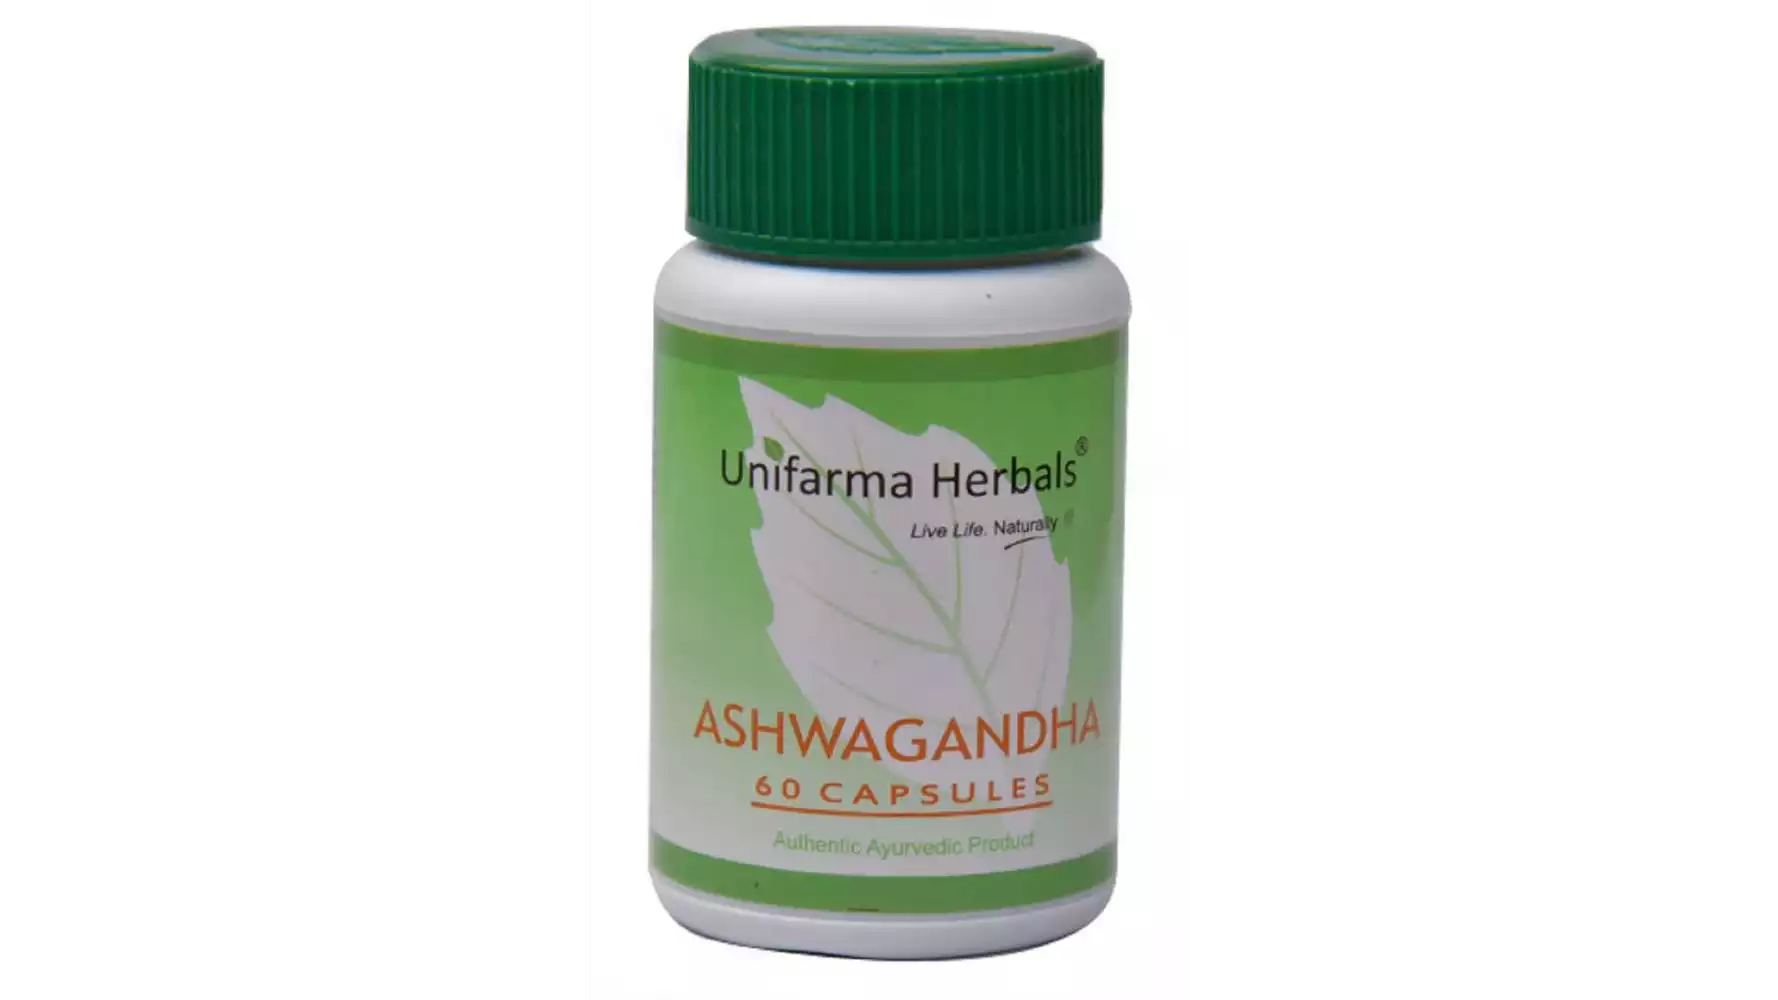 Unifarma Herbals Ashwagandha (60caps)